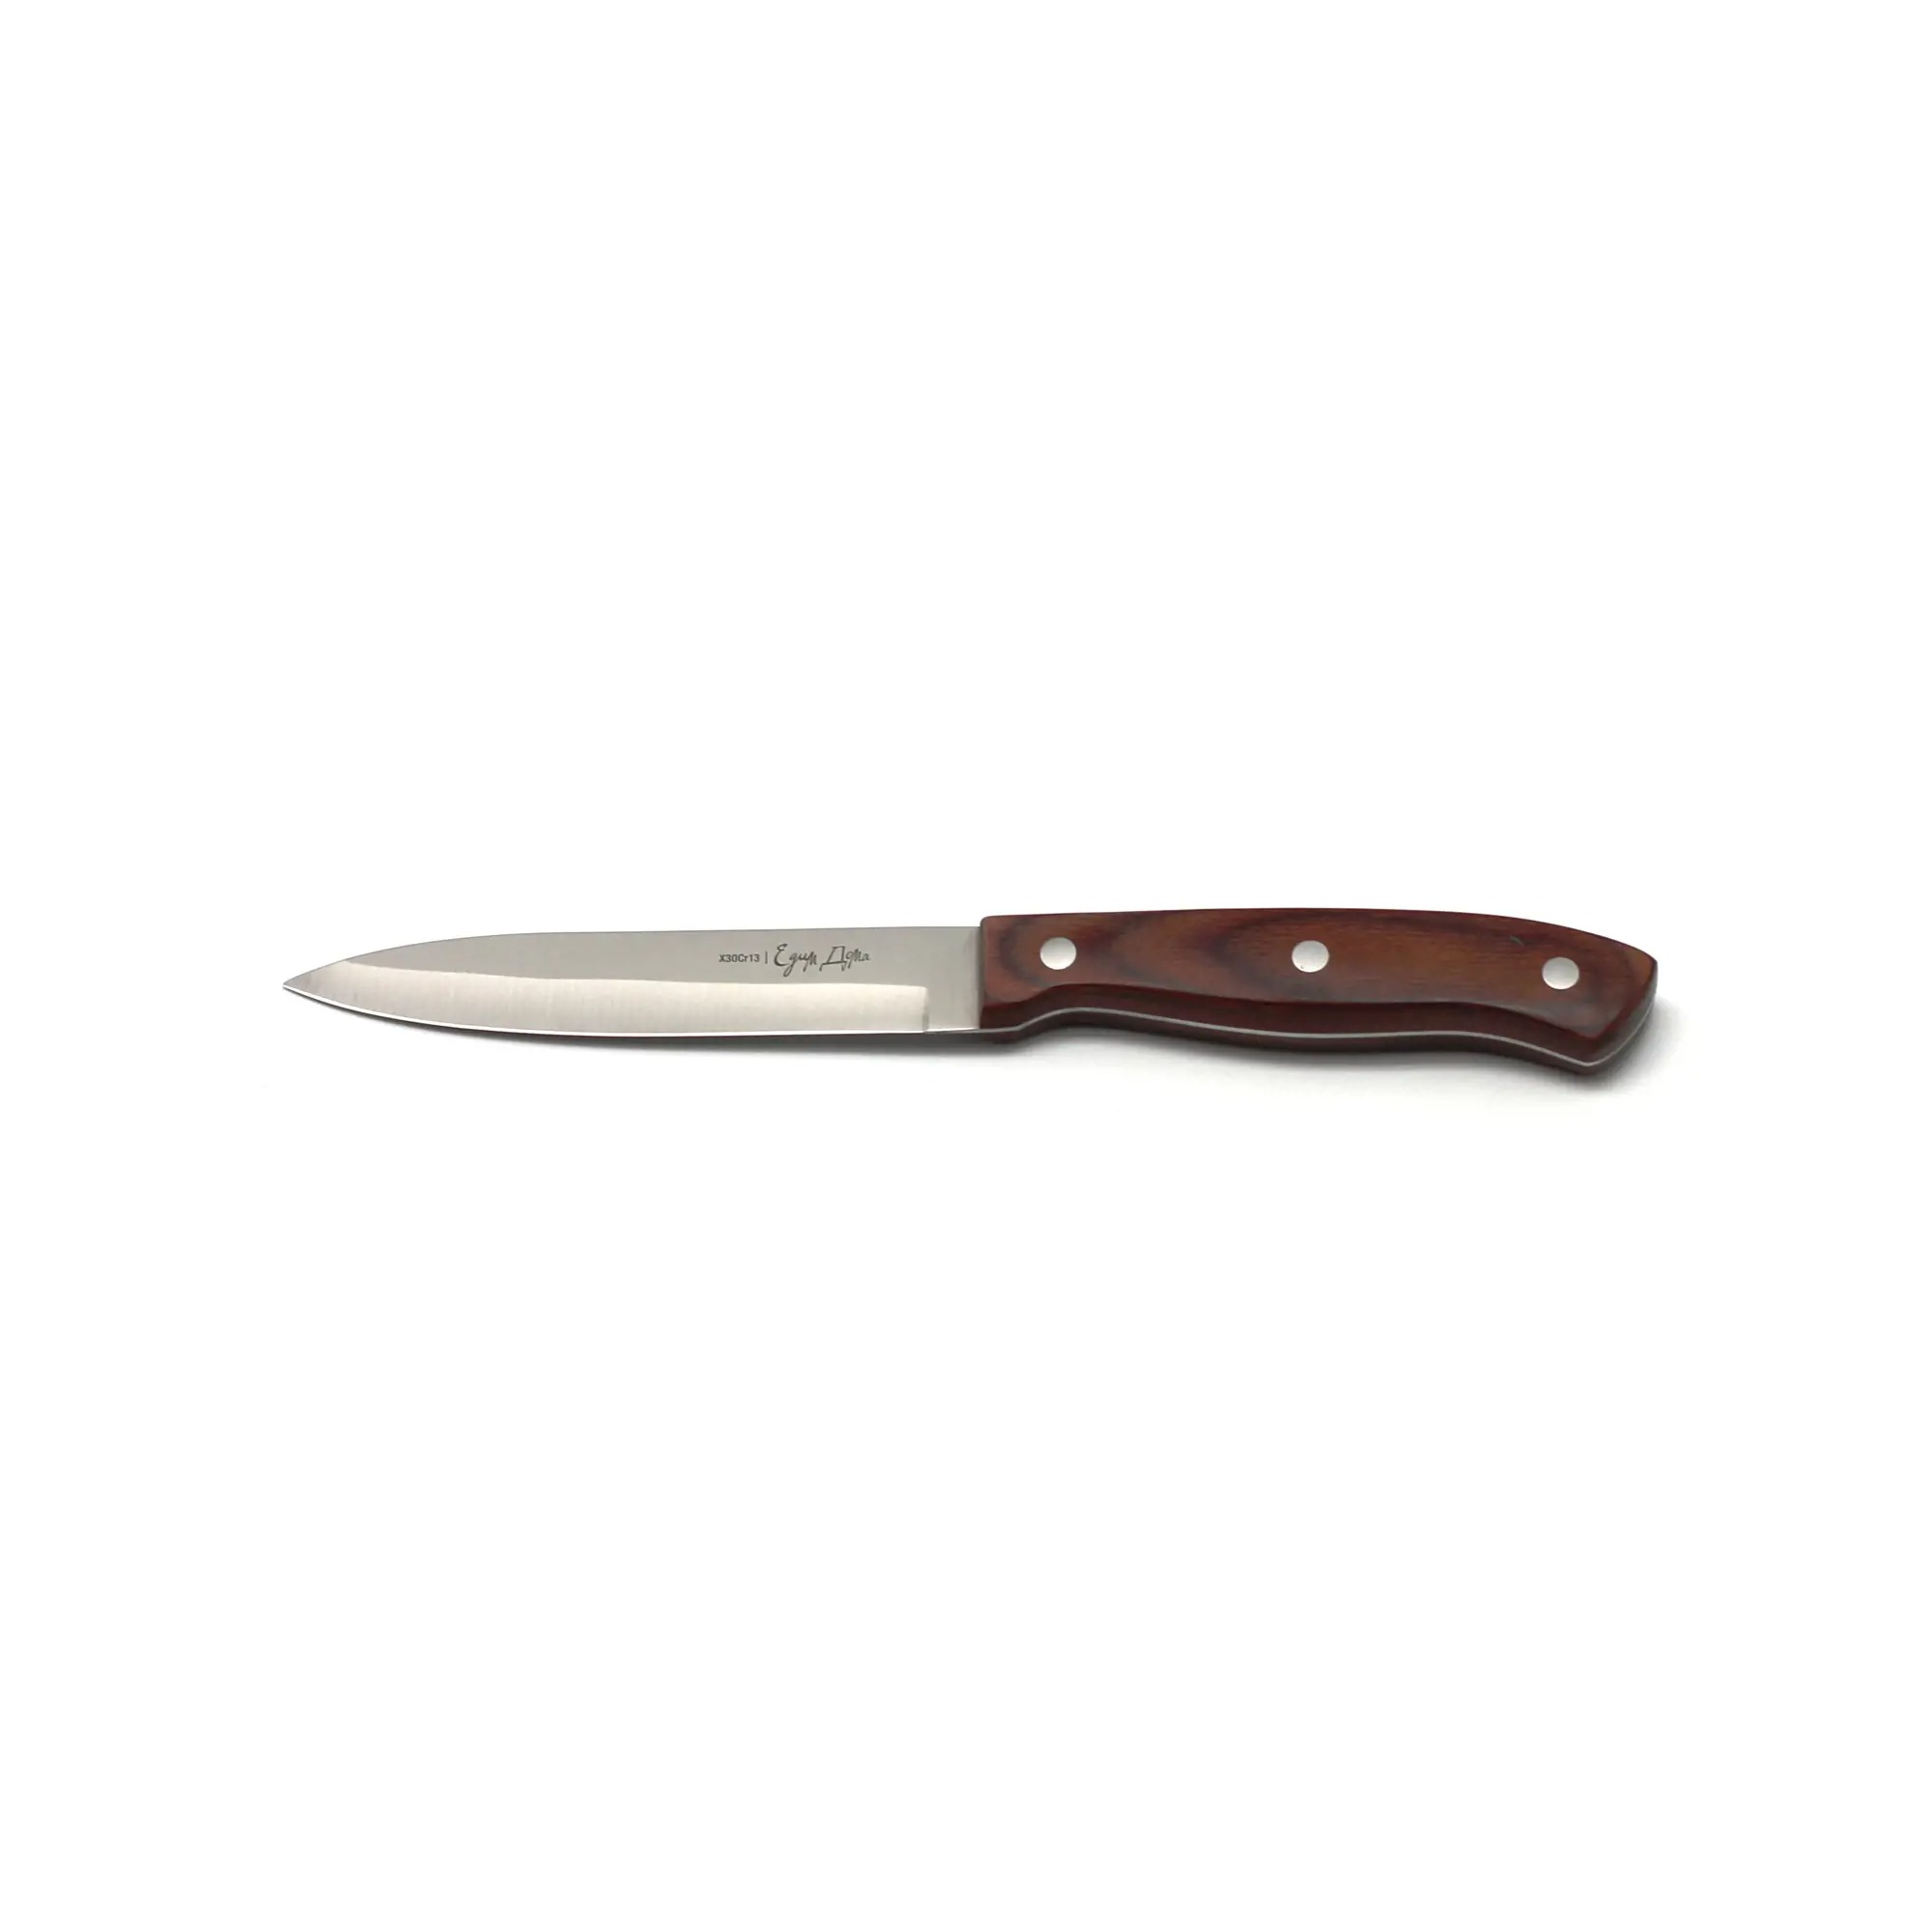 Нож универсальный Едим дома кухонный 12см листовой (ED-408) нож кухонный едим дома 11 см